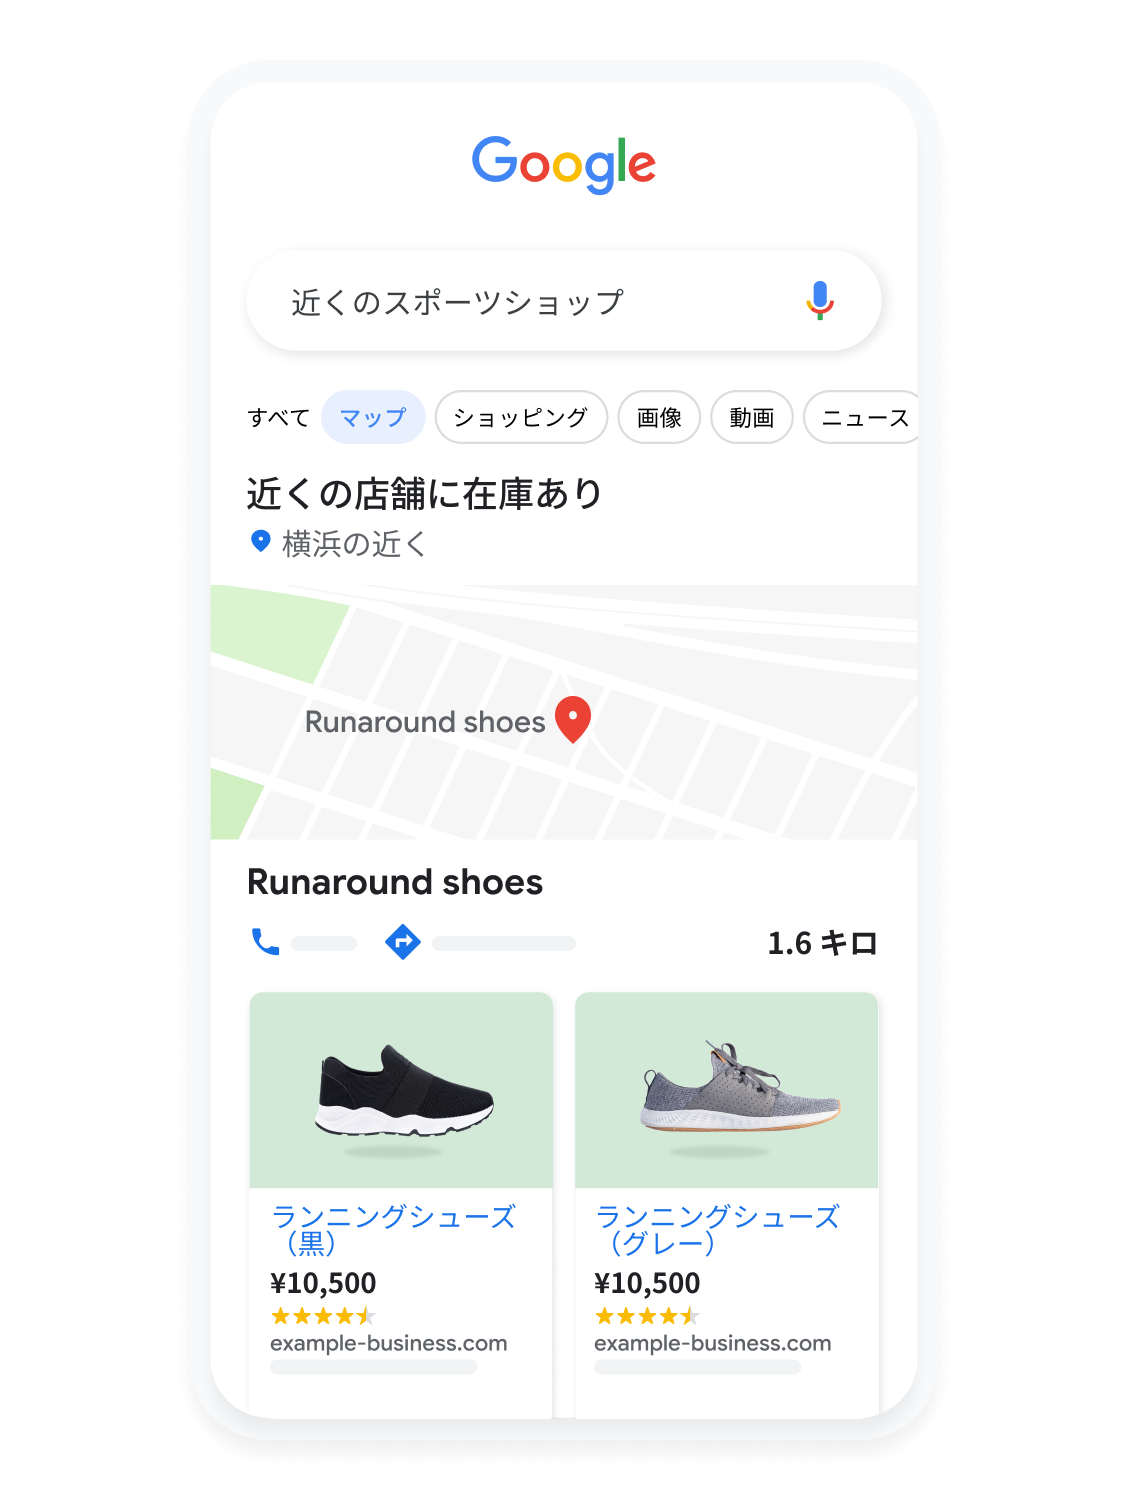 Google マップでランニング シューズを検索する様子を示す、モバイル用ユーザー インターフェースのアニメーション。